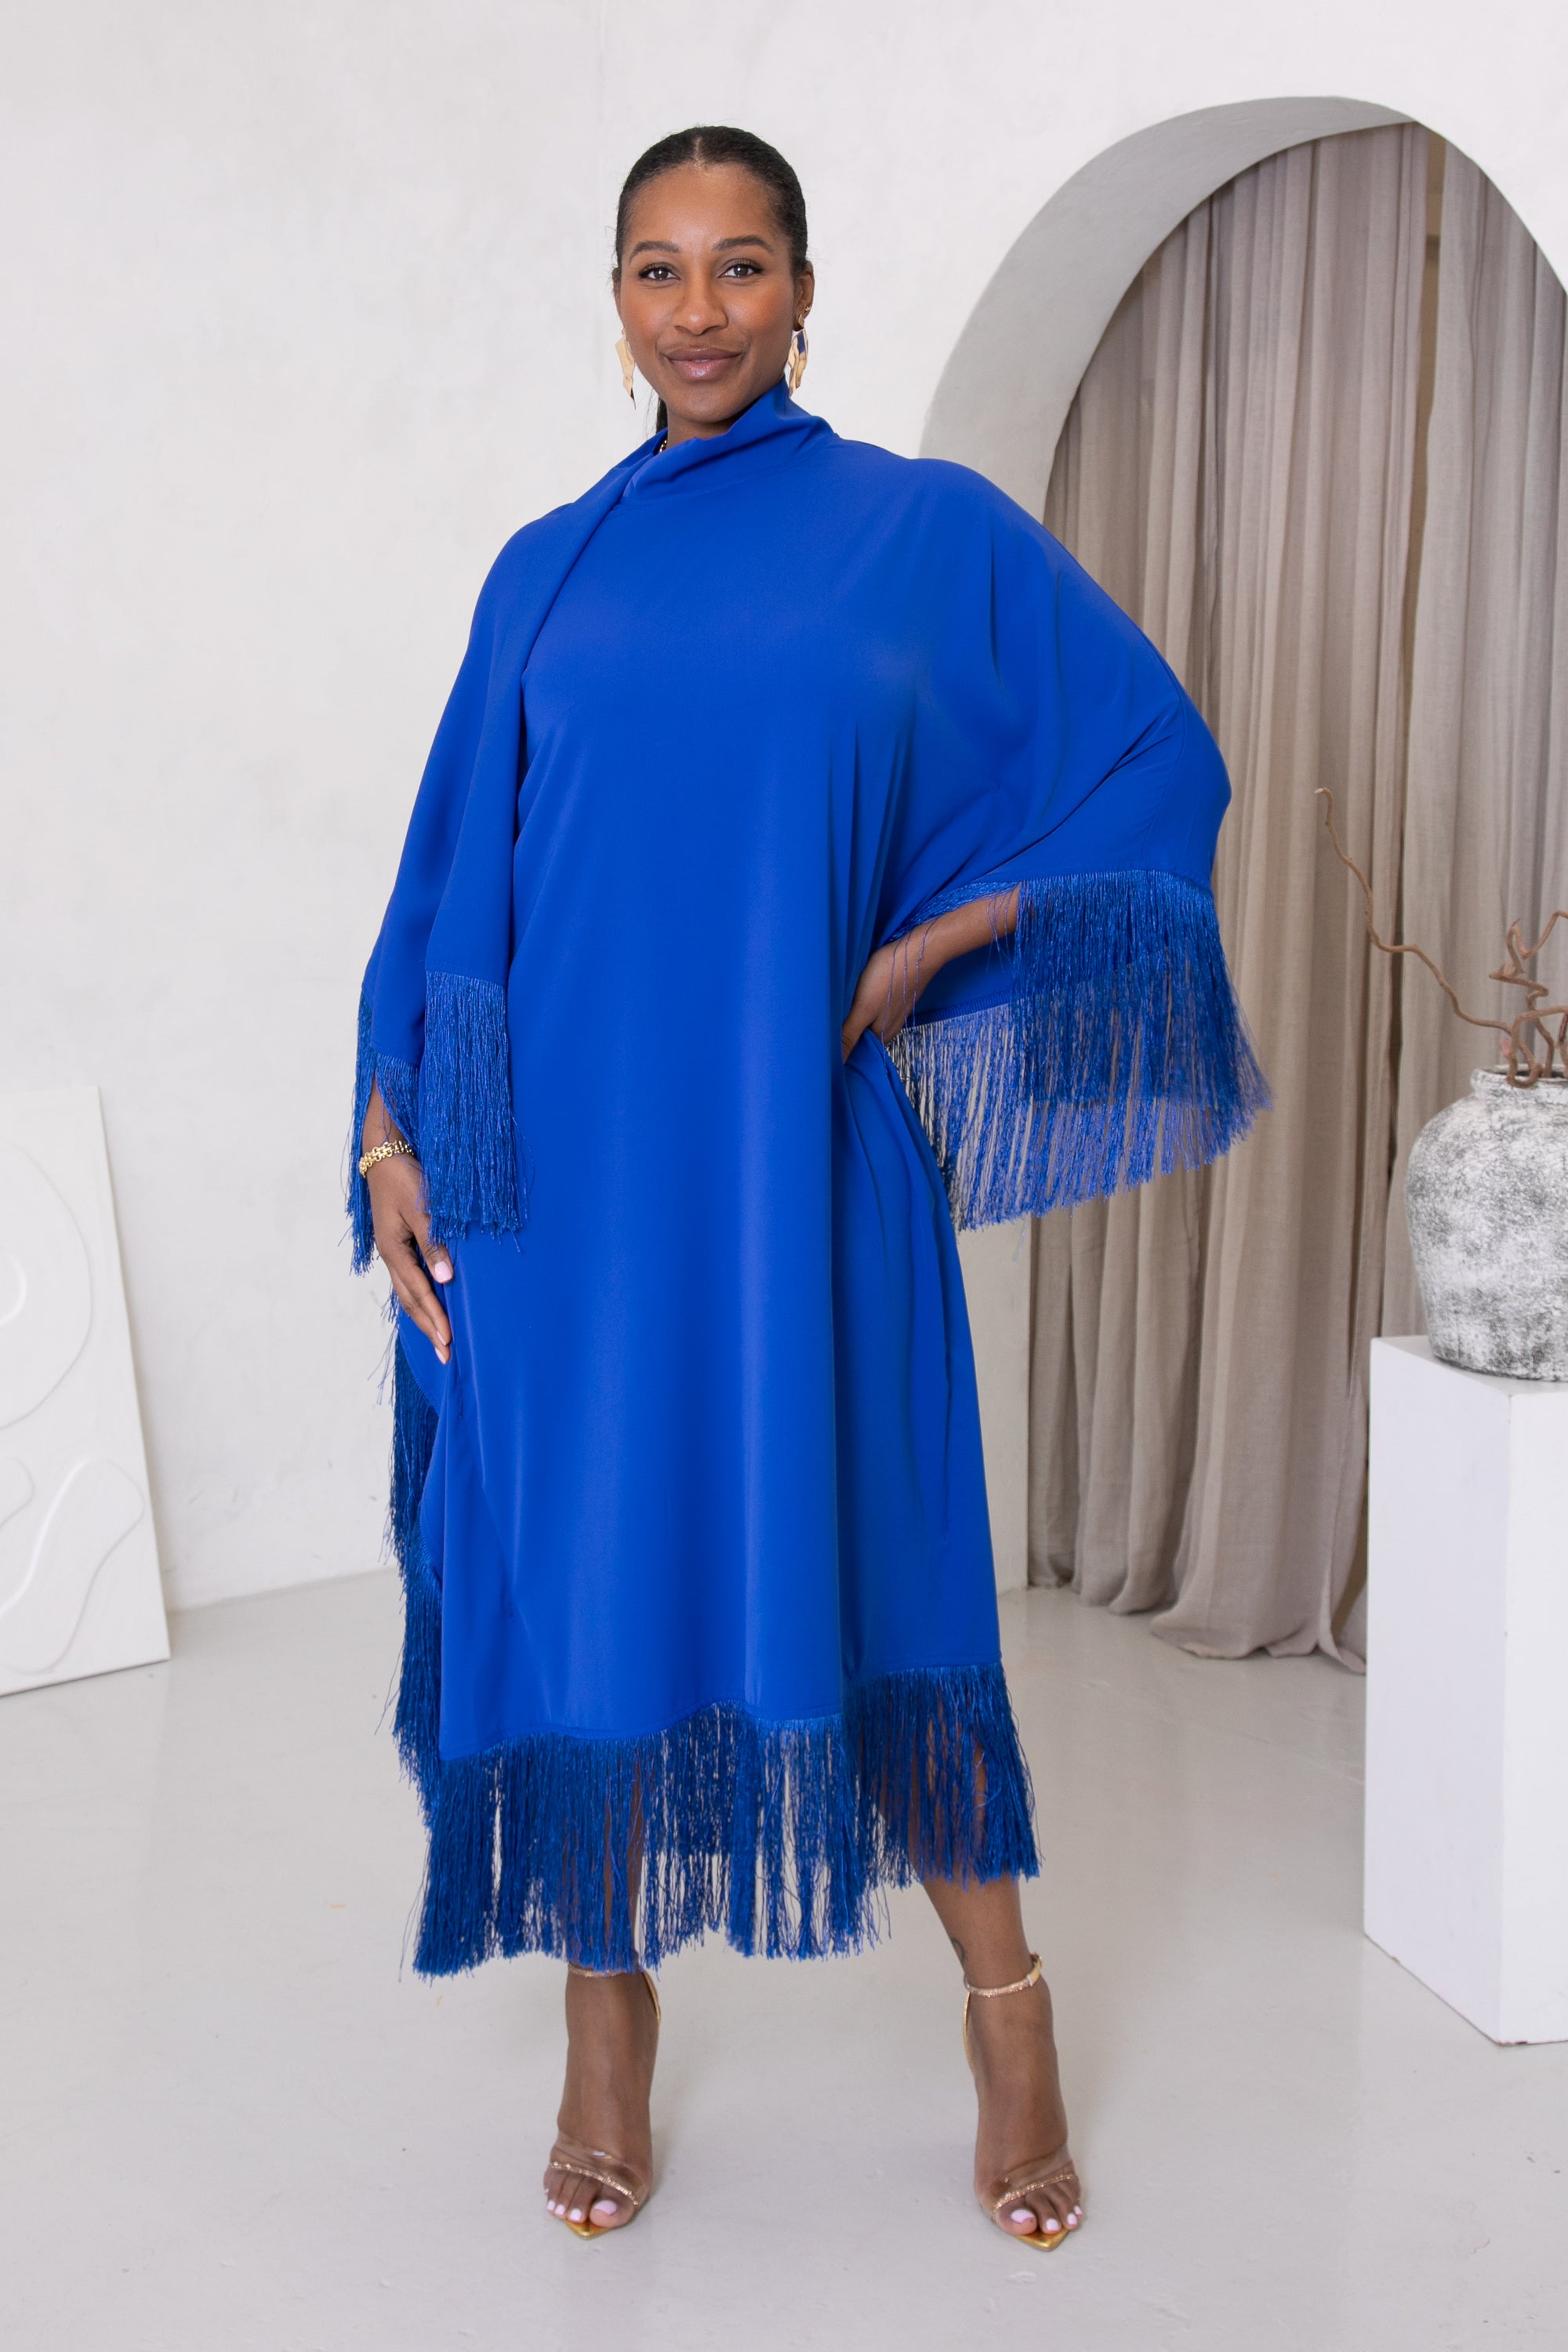 CLEOPATRA FRINGE HIGH NECK DRESS - BLUE